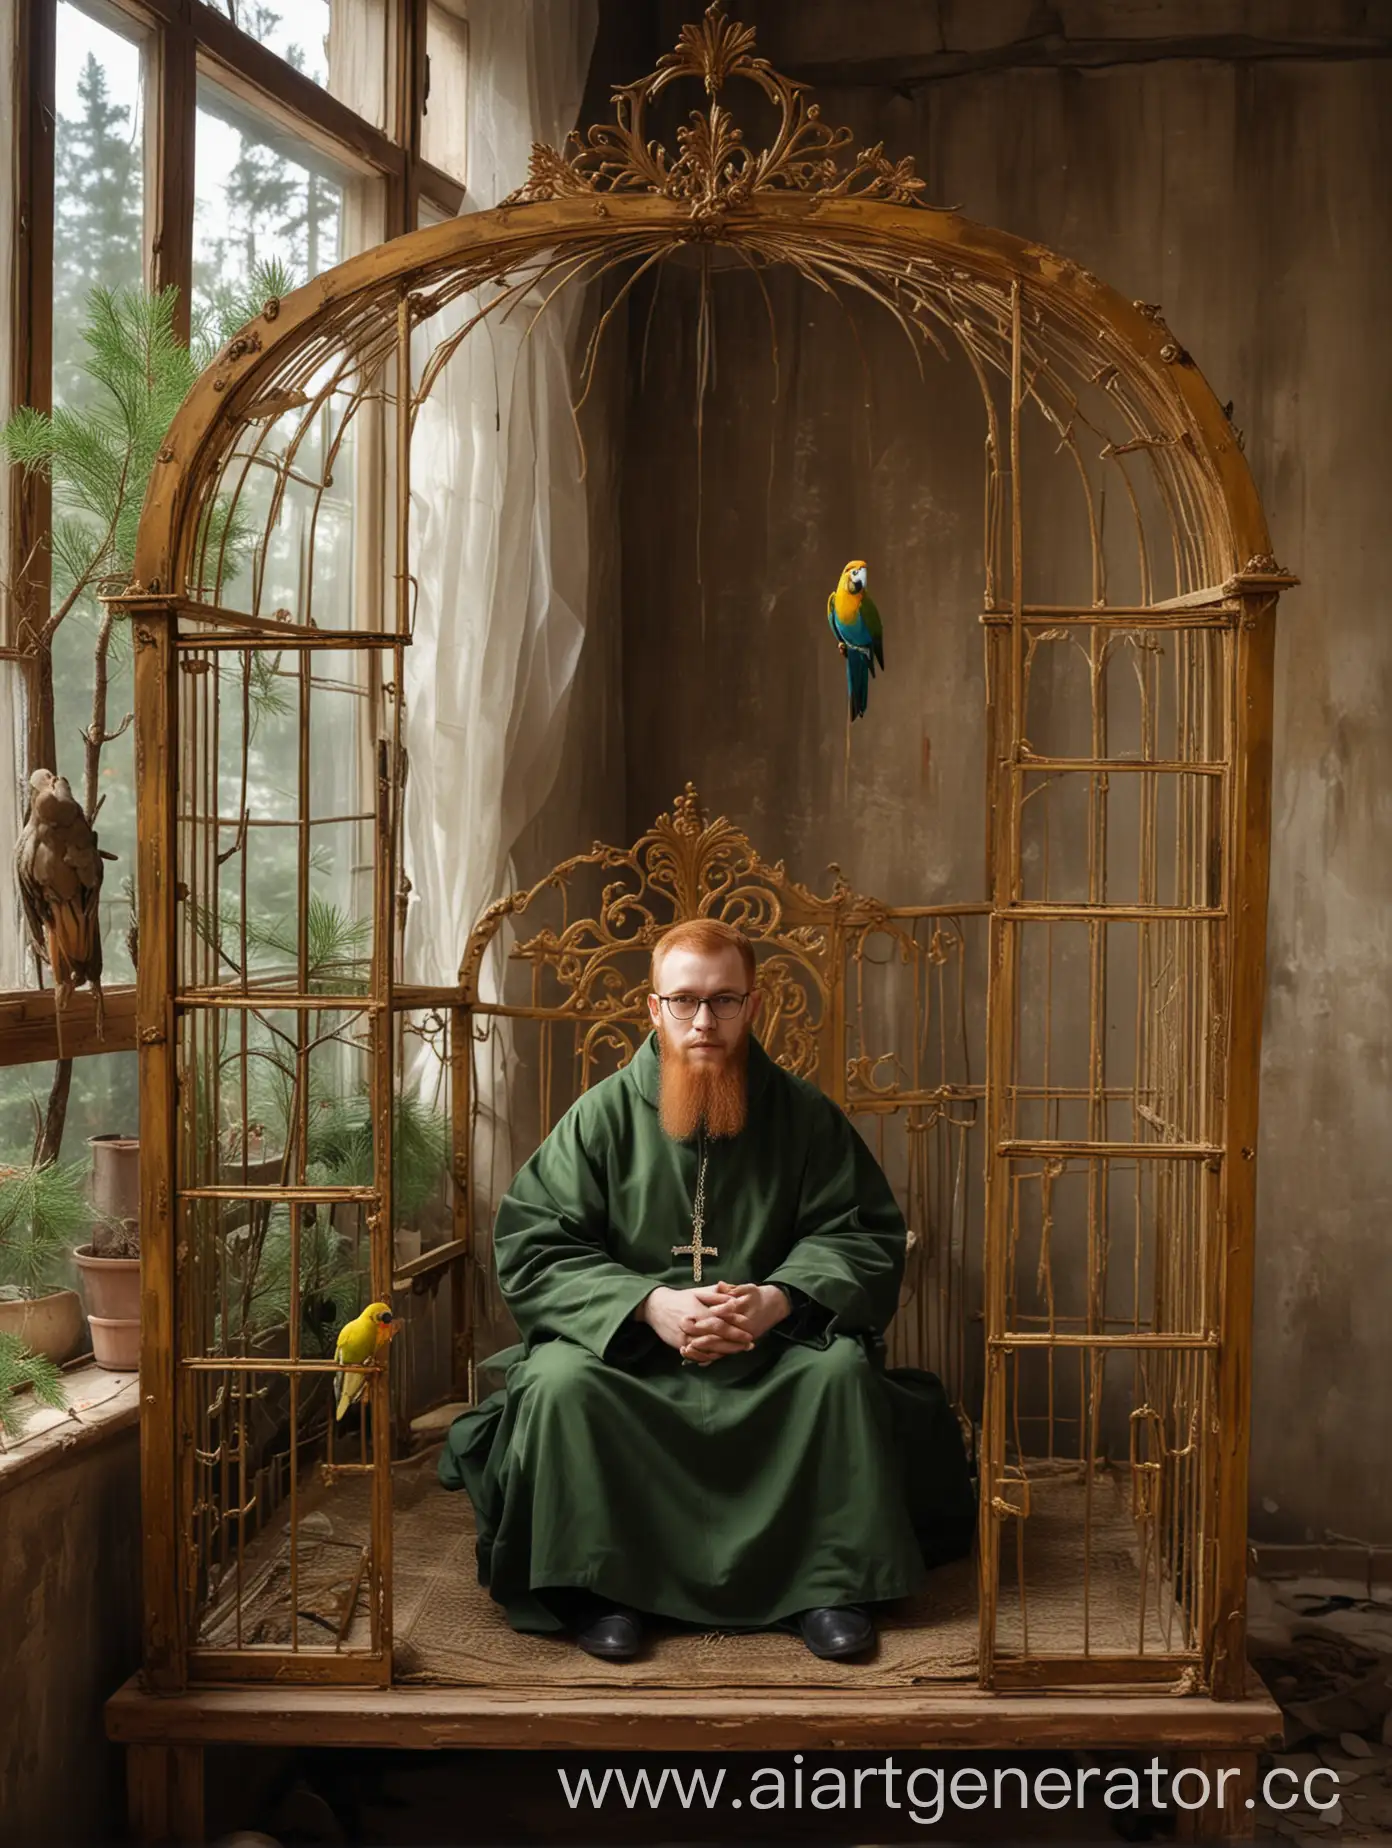 православный монах епископ, рыжий, в очках, сидит на троне в бедной келье в русском стиле, золотая большая клетка с попугаем ара стоит у окна, за окном сосновый лес, на стене портрет писателя Достоевского в золотой тяжёлой раме